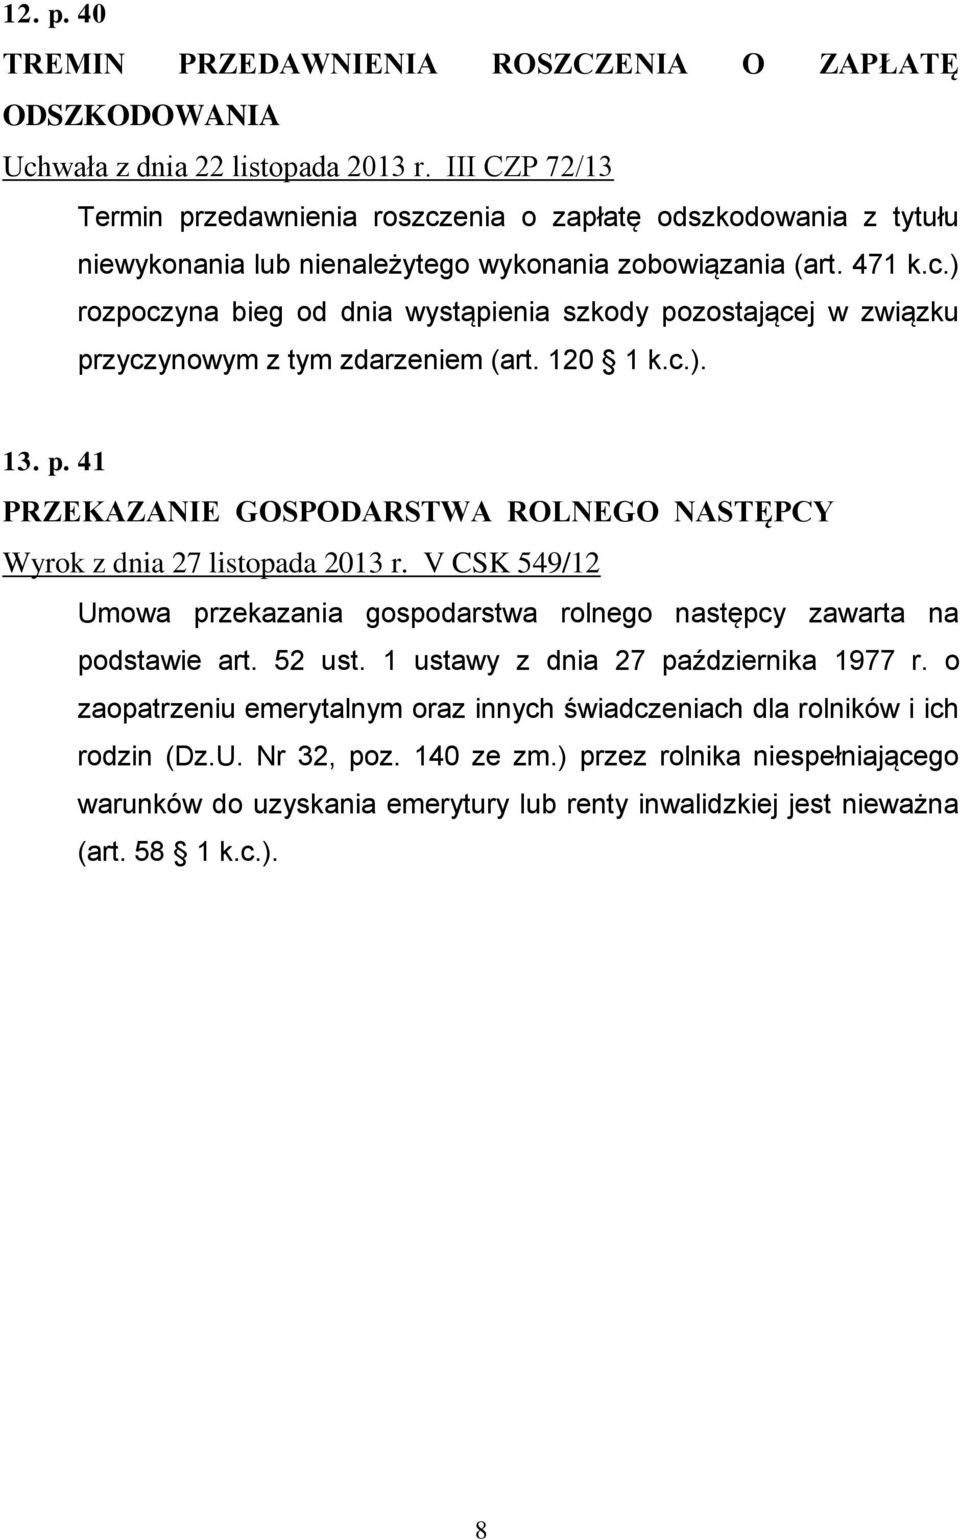 120 1 k.c.). 13. p. 41 PRZEKAZANIE GOSPODARSTWA ROLNEGO NASTĘPCY Wyrok z dnia 27 listopada 2013 r. V CSK 549/12 Umowa przekazania gospodarstwa rolnego następcy zawarta na podstawie art. 52 ust.